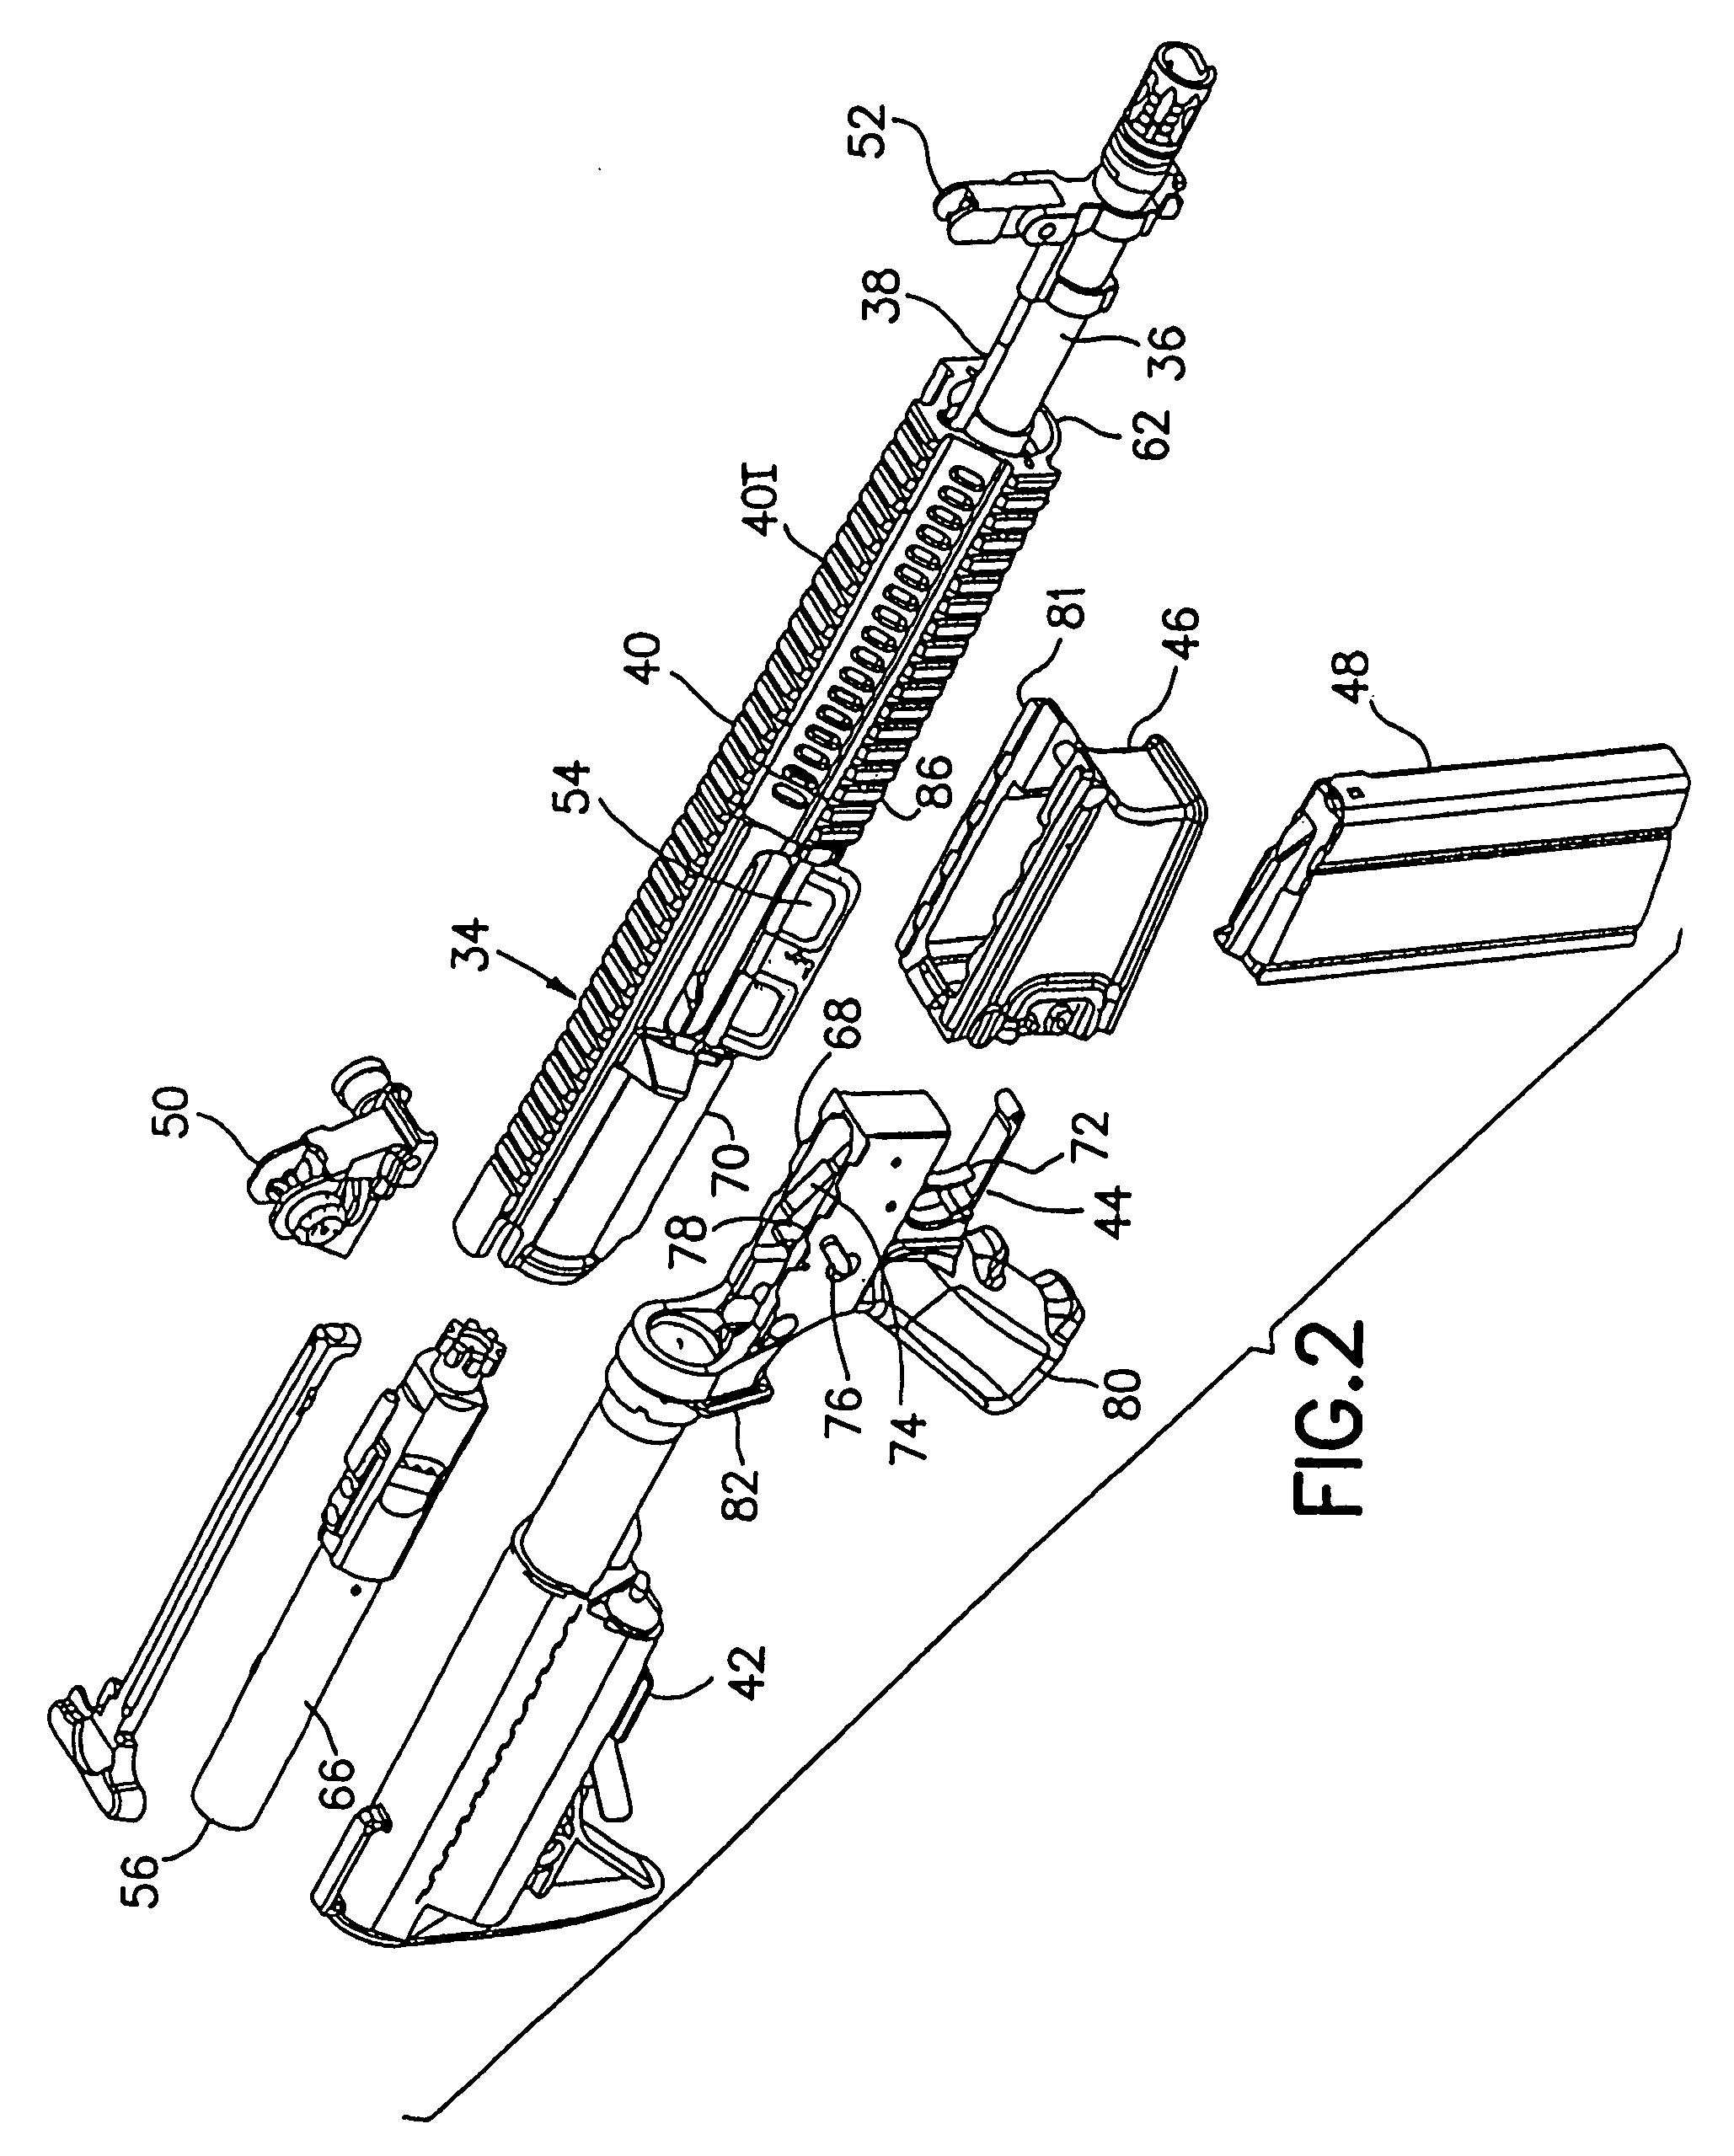 Automatic or semi-automatic rifle